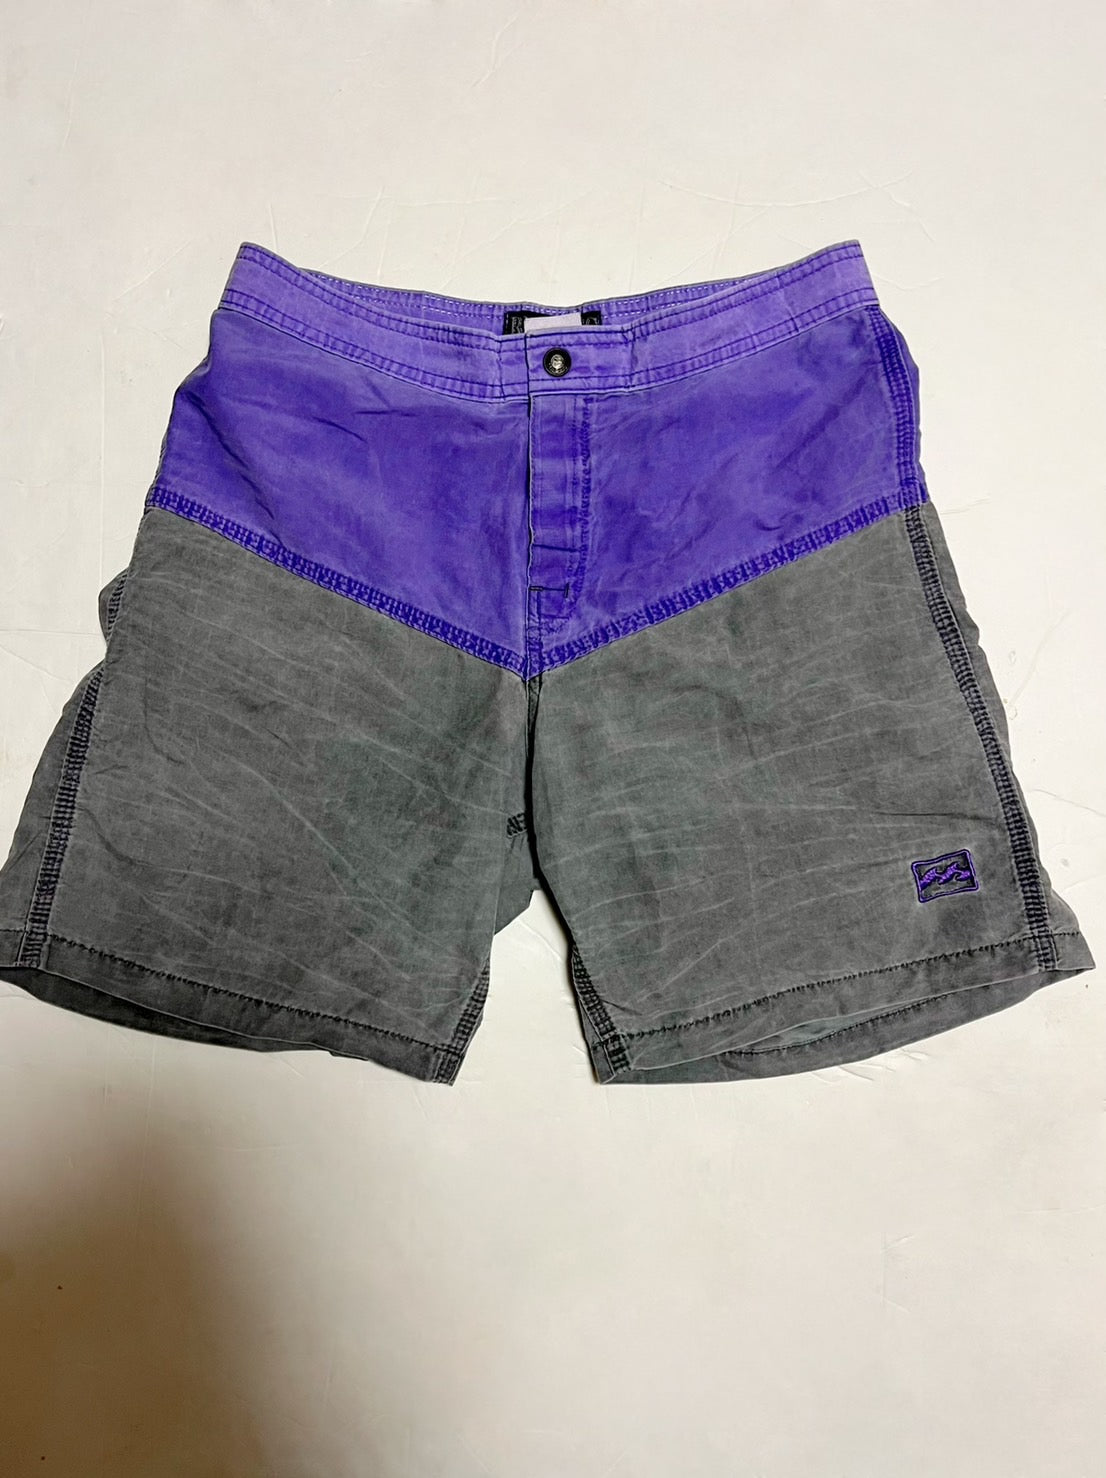 【Billabong 】80's billabong board shorts size 29 made in USA 水陸両用 ショートパンツ